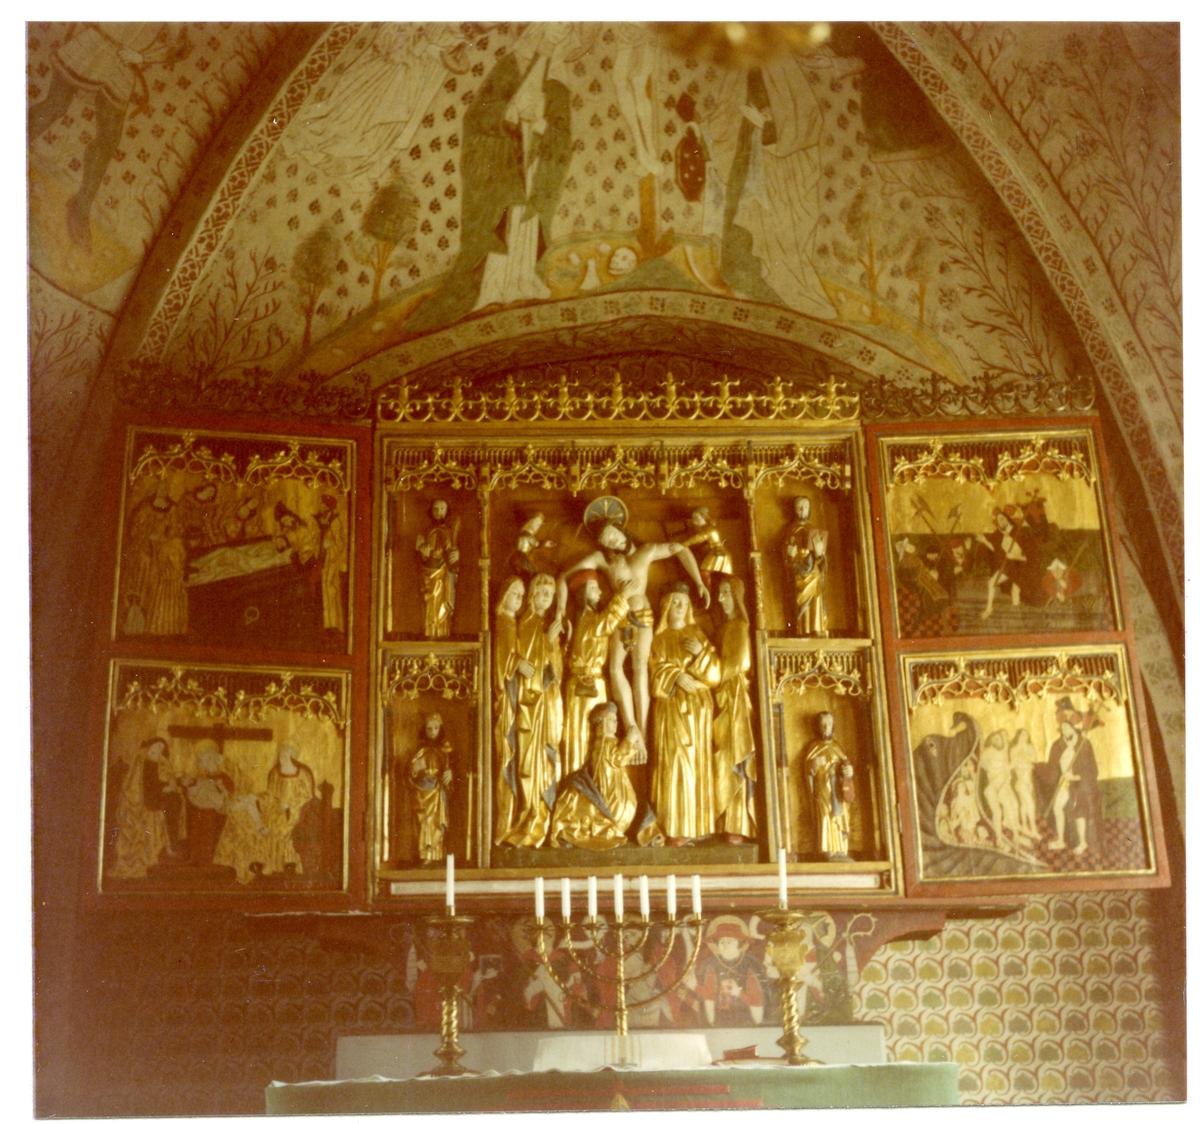 Torpa sn, Kungsör kn.
Altartavla i Torpa kyrka, 1979.